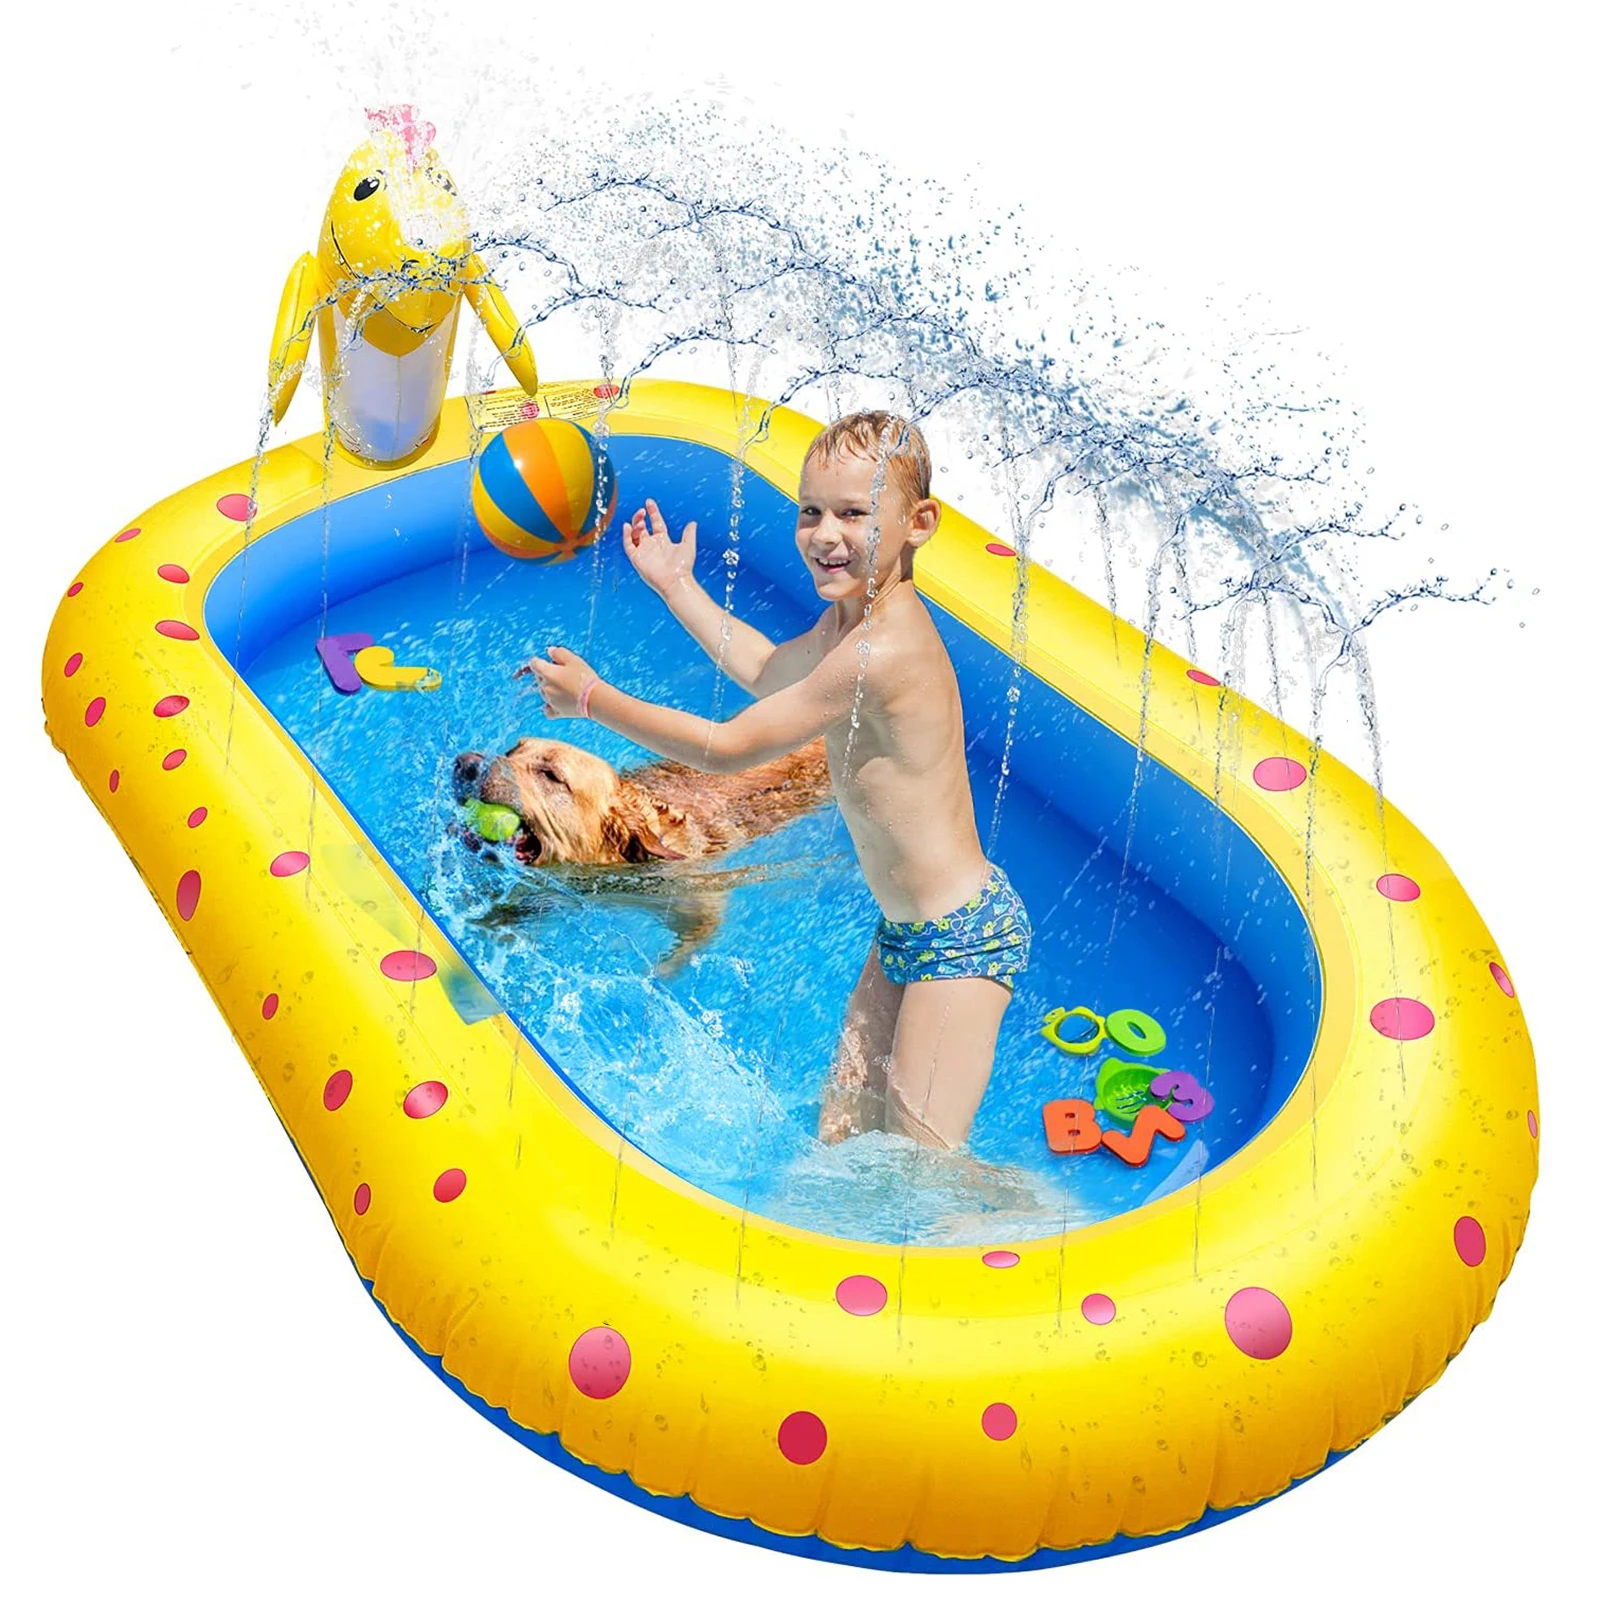 

piscine jet d'eau Piscine Gonflable Enfant Aire De Jeux,Piscine Gonflable Adulte Piscine Enfant Exterieur,Balles Piscine A Ball, Blue,yellow